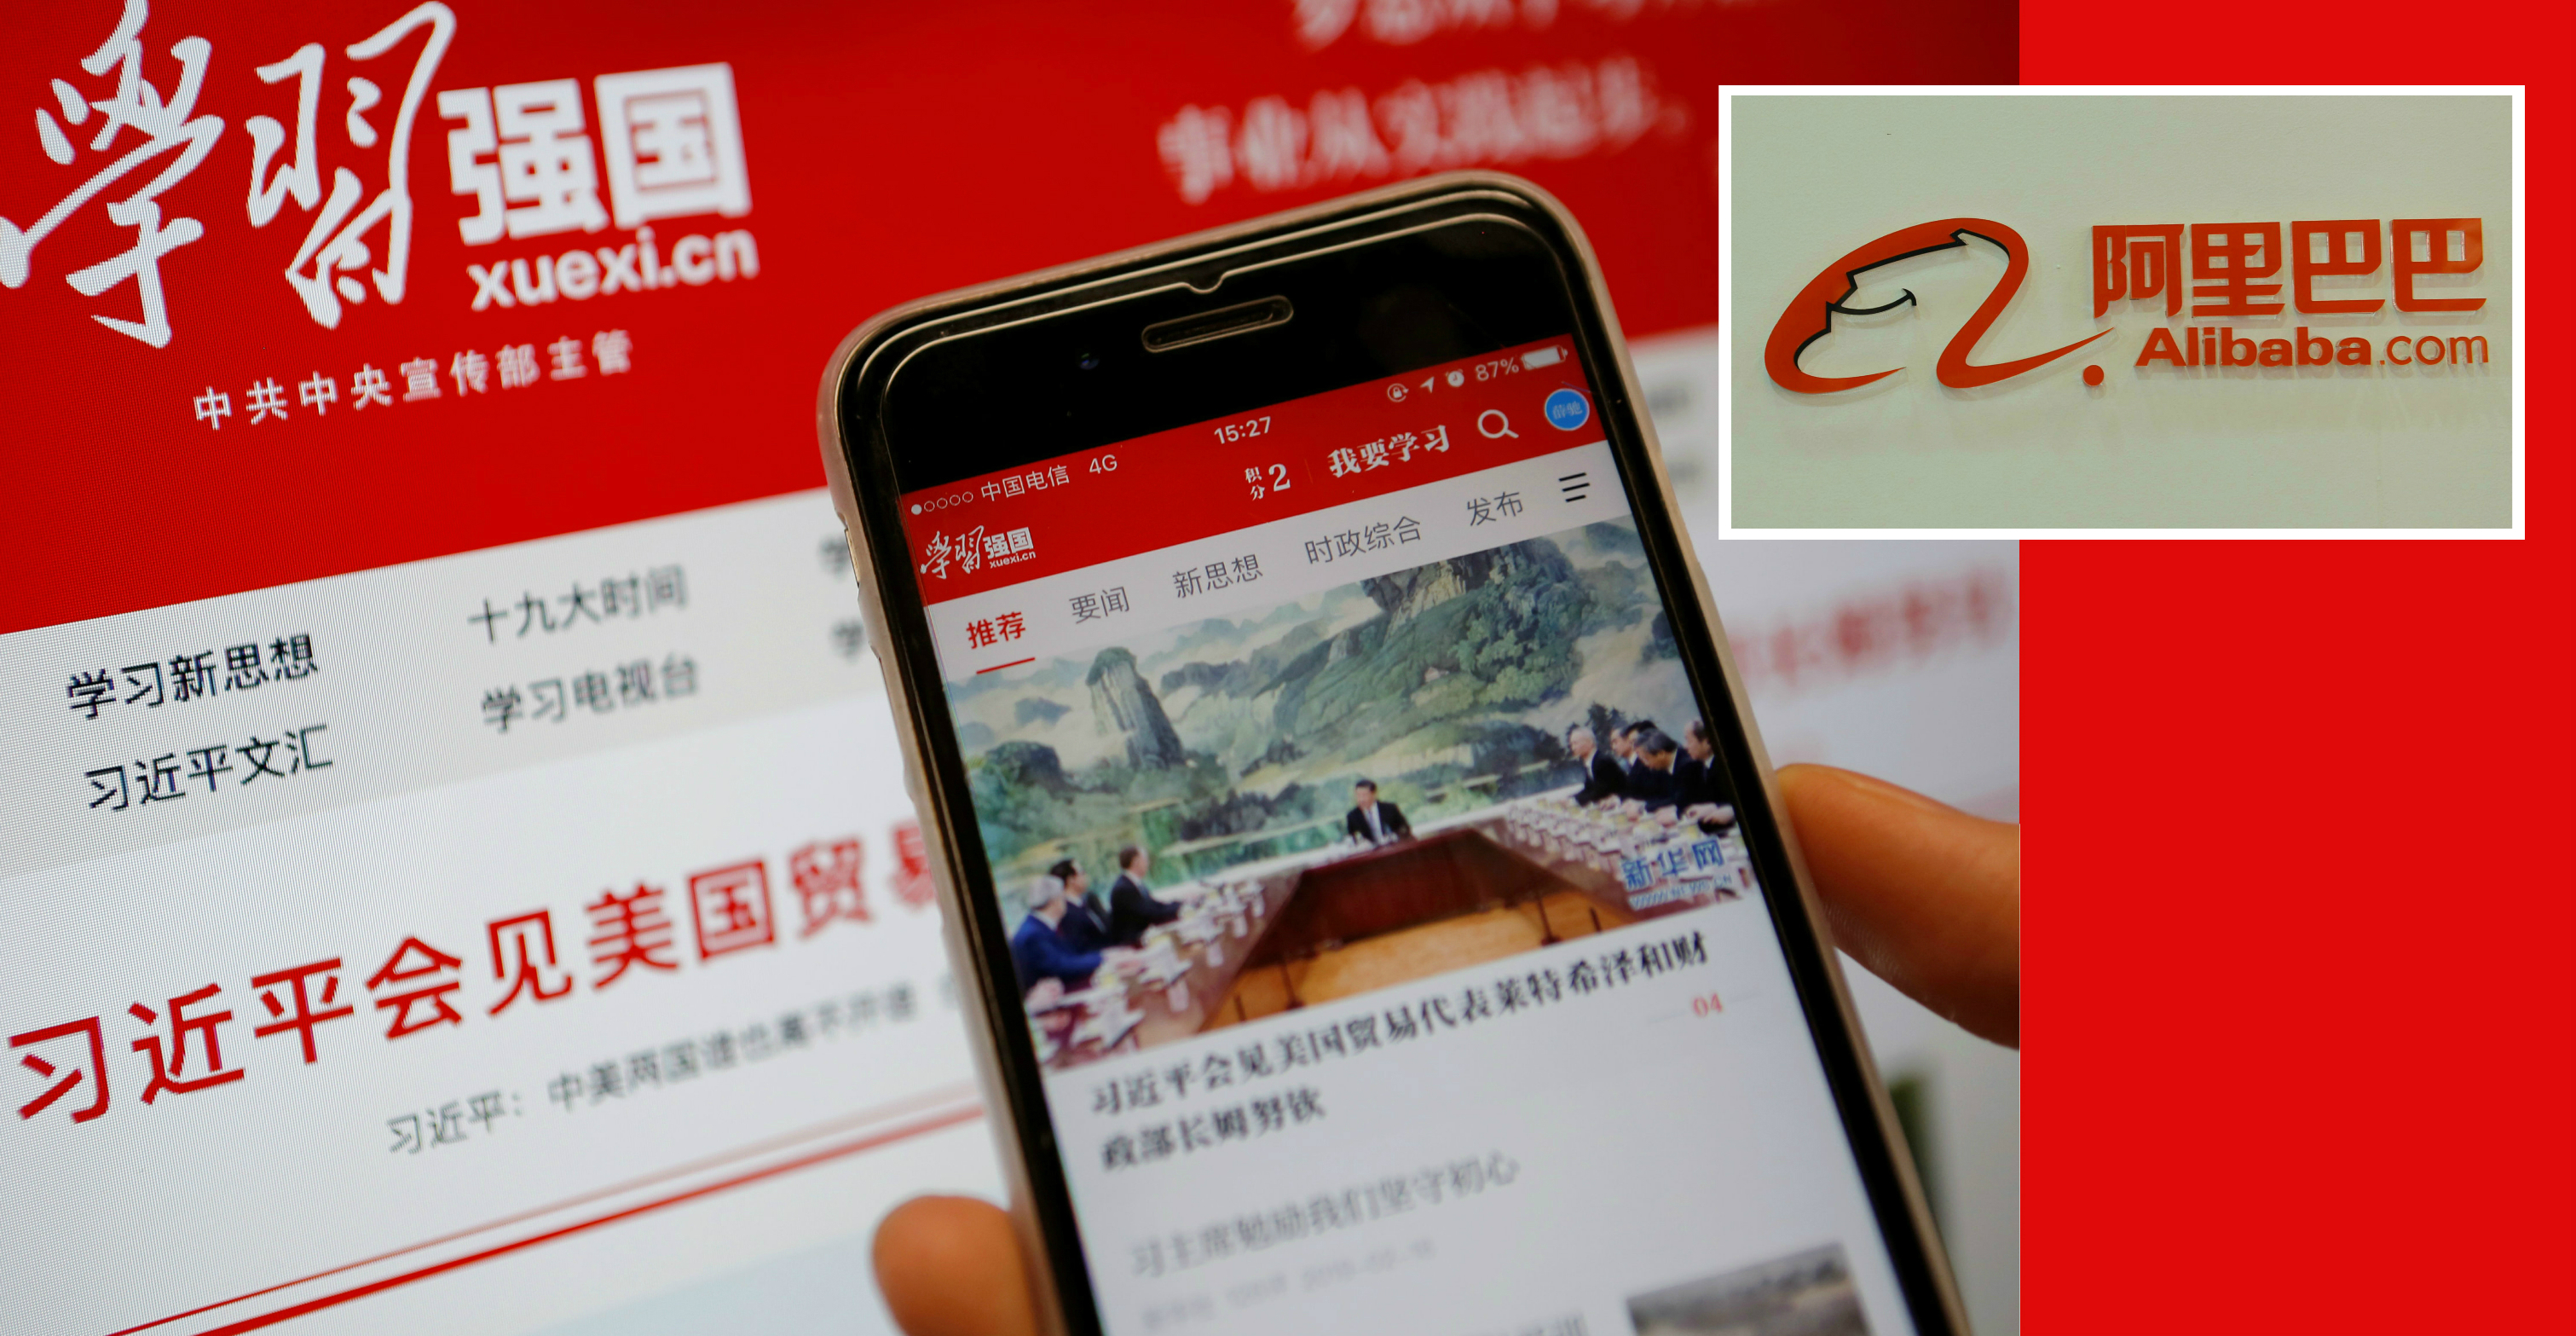 C’è Alibaba dietro l'app di propaganda del Partito Comunista Cinese